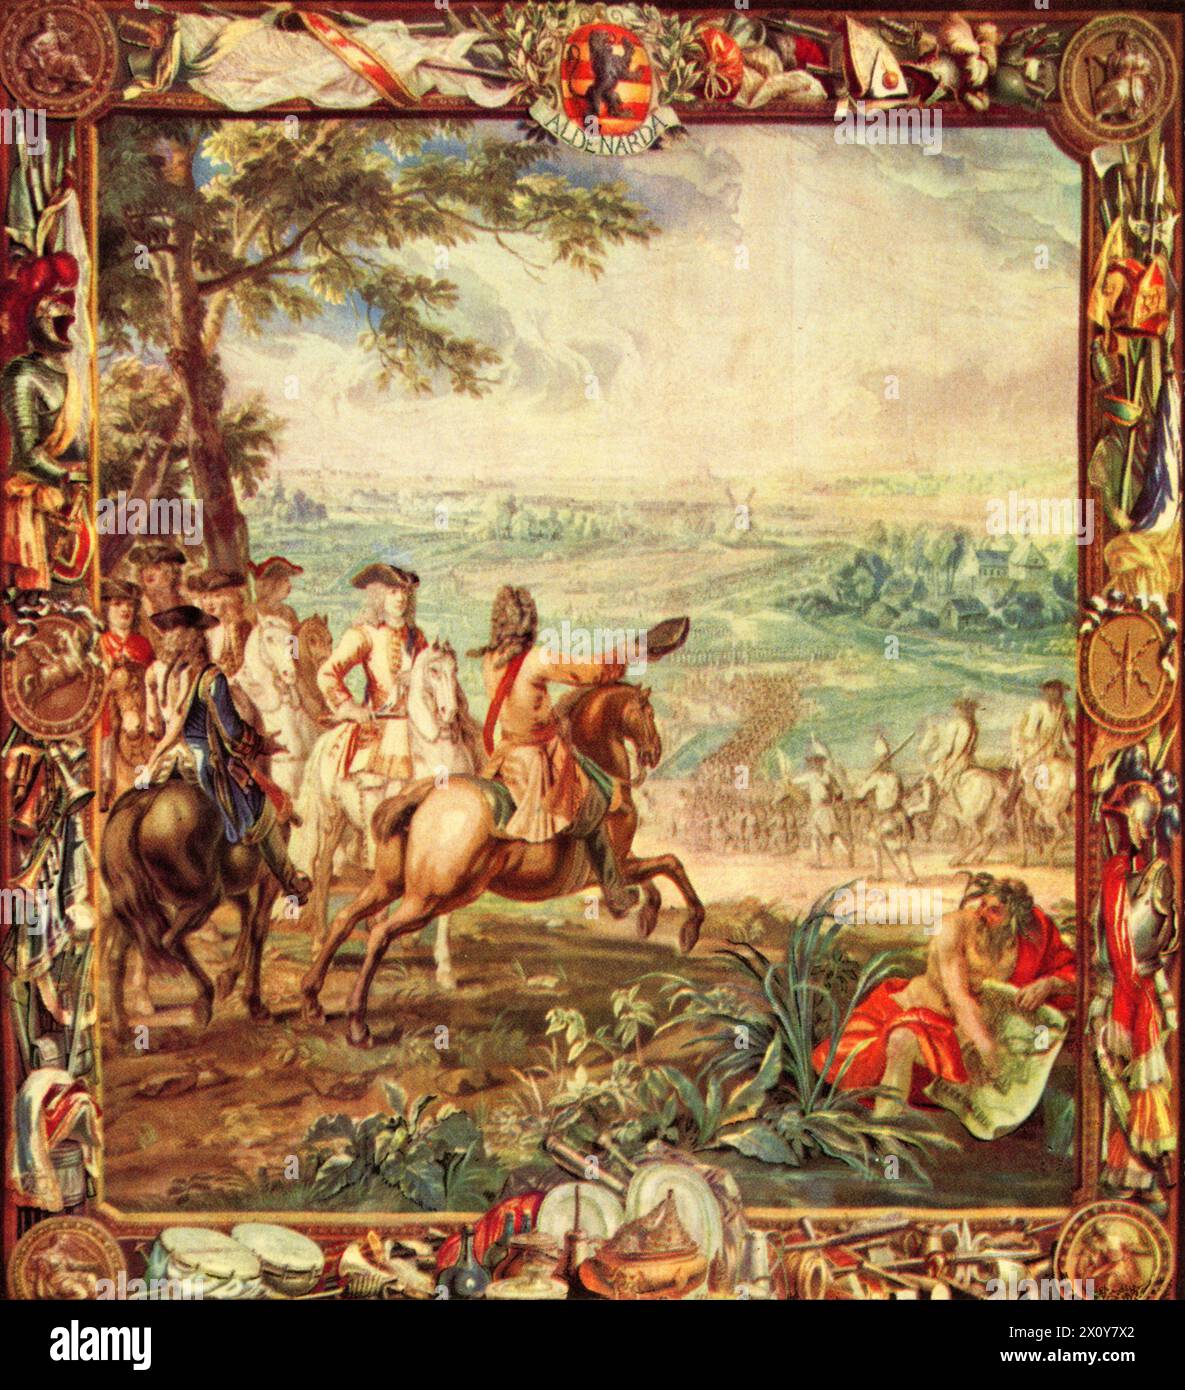 Marlborough nella Battaglia di Oudenarde, 1708. Dopo Judocus de Vos (1661-1734). La battaglia di Oudenarde fu uno dei principali scontri della guerra di successione spagnola. Una forza della grande Alleanza sotto il comando di John Churchill, i duca di Marlborough (1650-1722) e del principe Eugenio di Savoia (1663-1736), combatté una forza francese sotto il comando del duca di Borgogna e del duca di Vendôme, la battaglia che portò alla vittoria della grande Alleanza. Dagli arazzi di Blenheim. Foto Stock